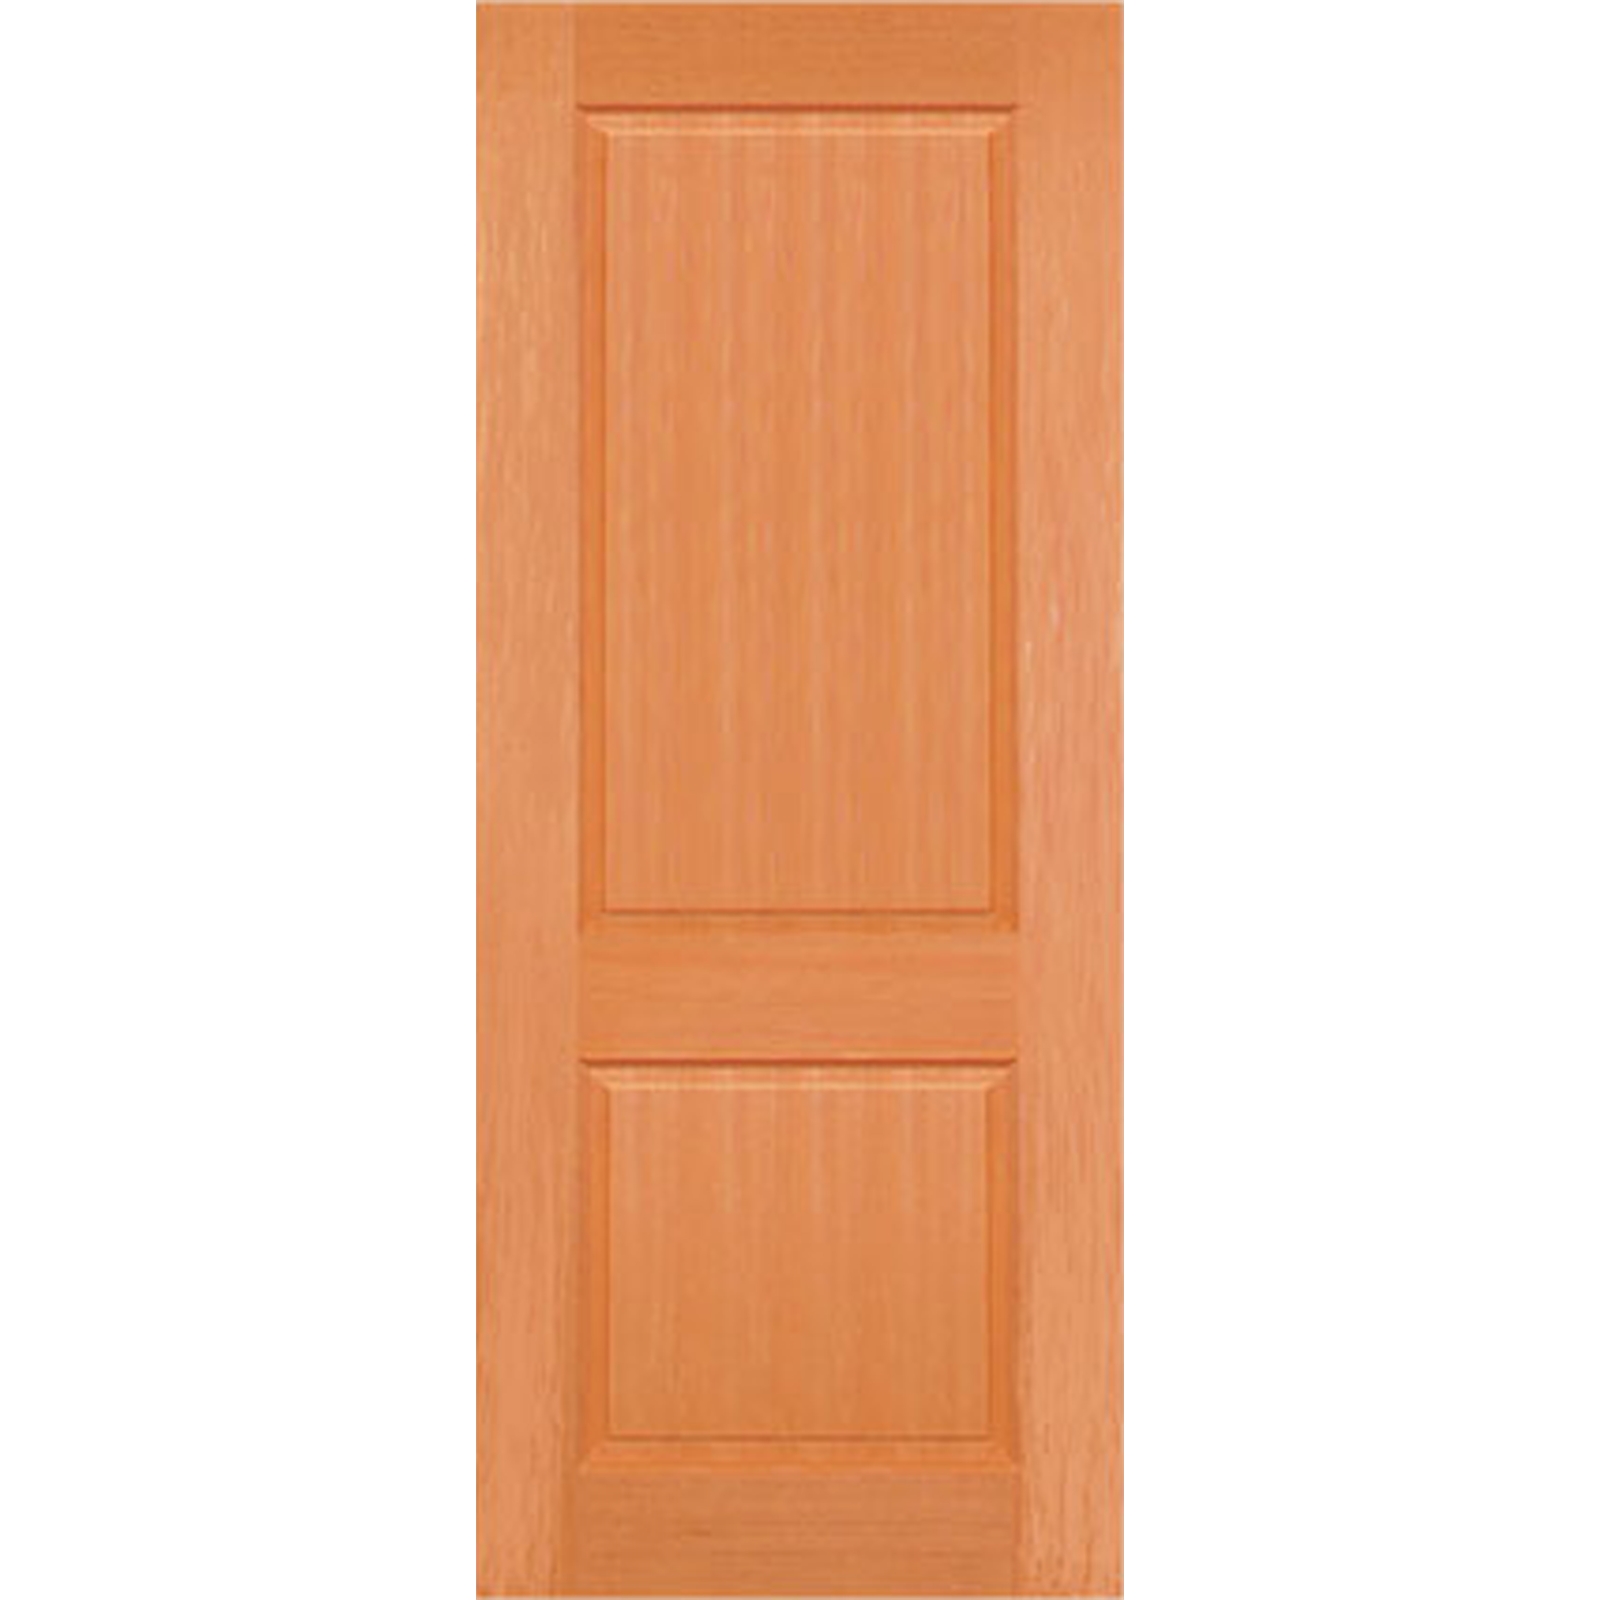 Woodcraft Doors 2040 x 820 x 40mm F1 Entrance Door